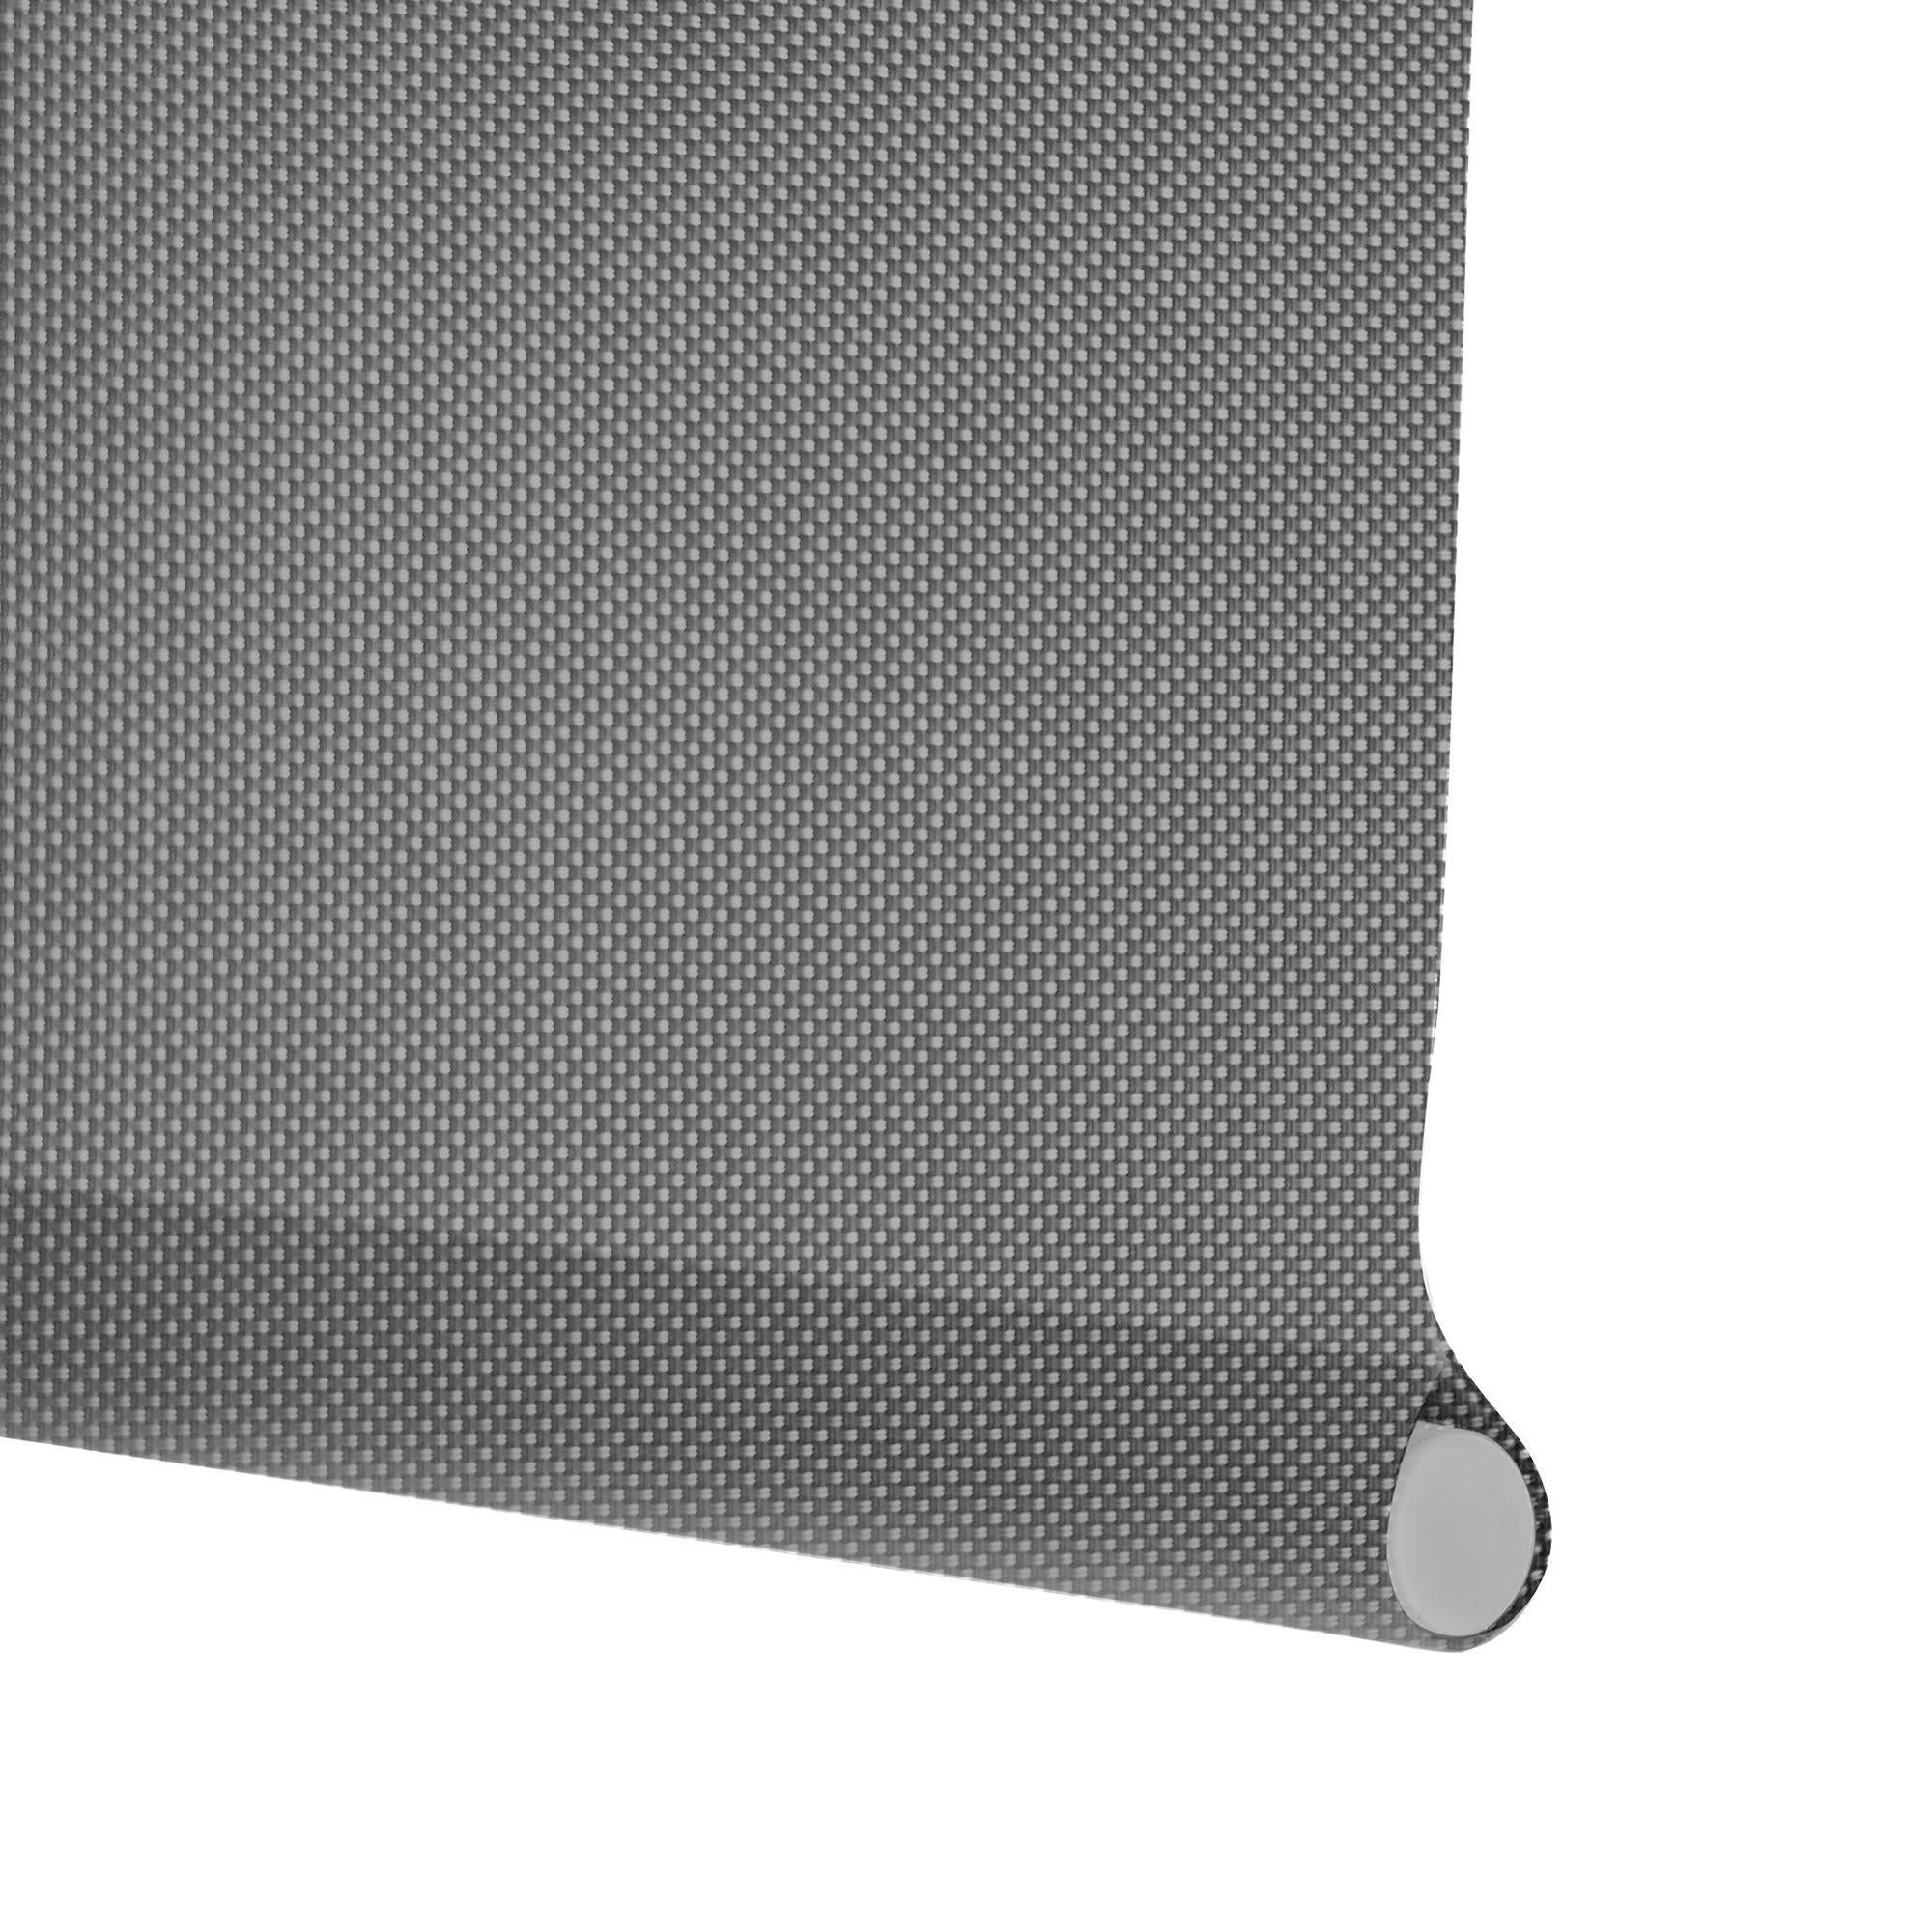 Tenda a rullo filtrante INSPIRE Screen grigio perla 120 x 250 cm - 3